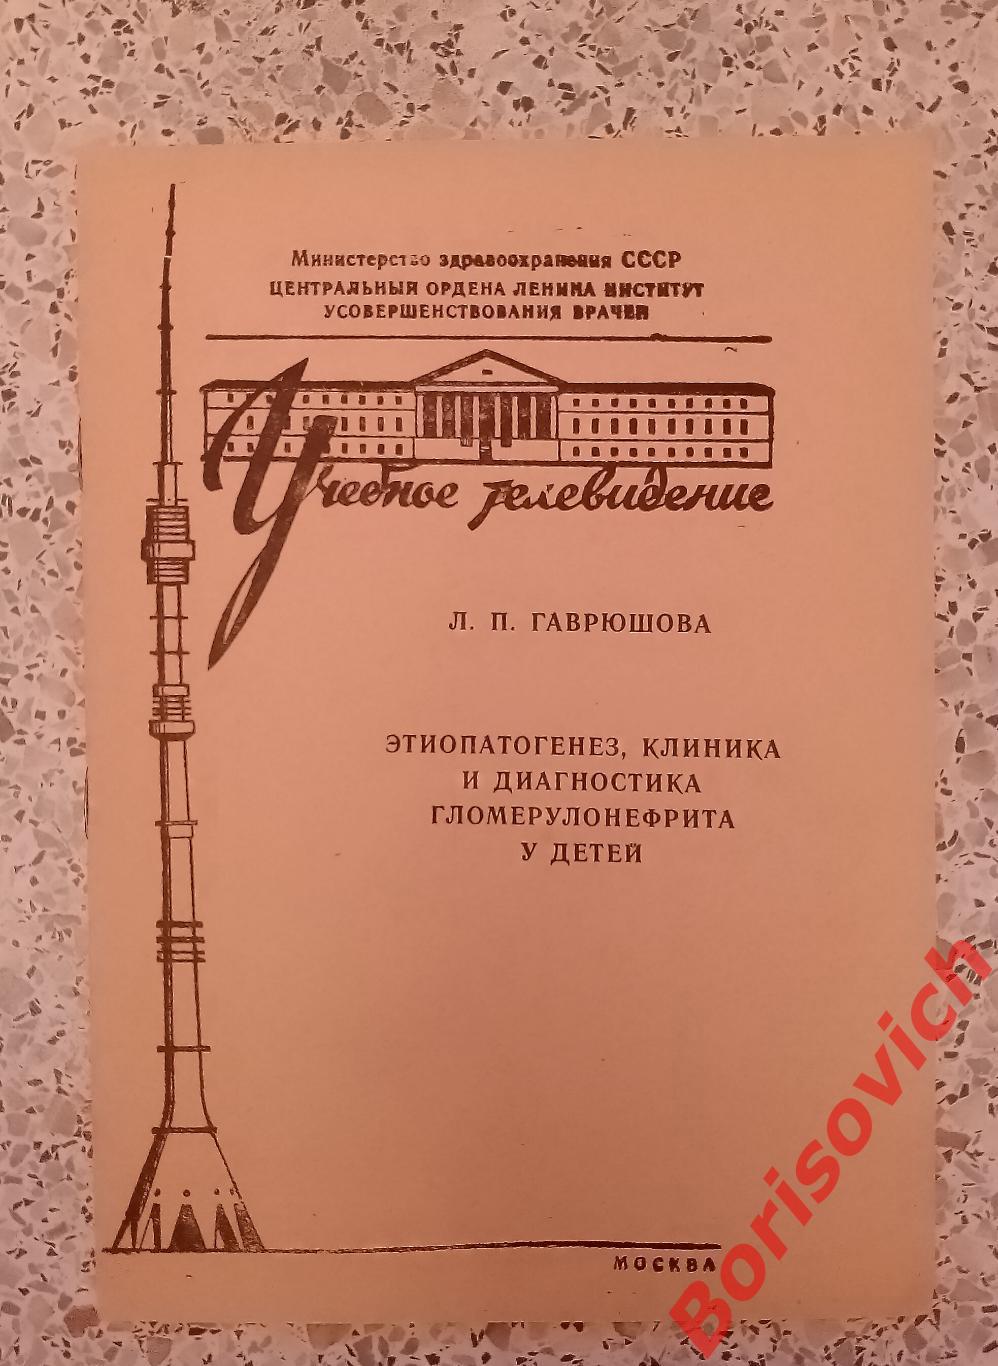 Этиопатогинез, клиника и диагностика гломерулонефрита у детей 1976 г Тираж 2000